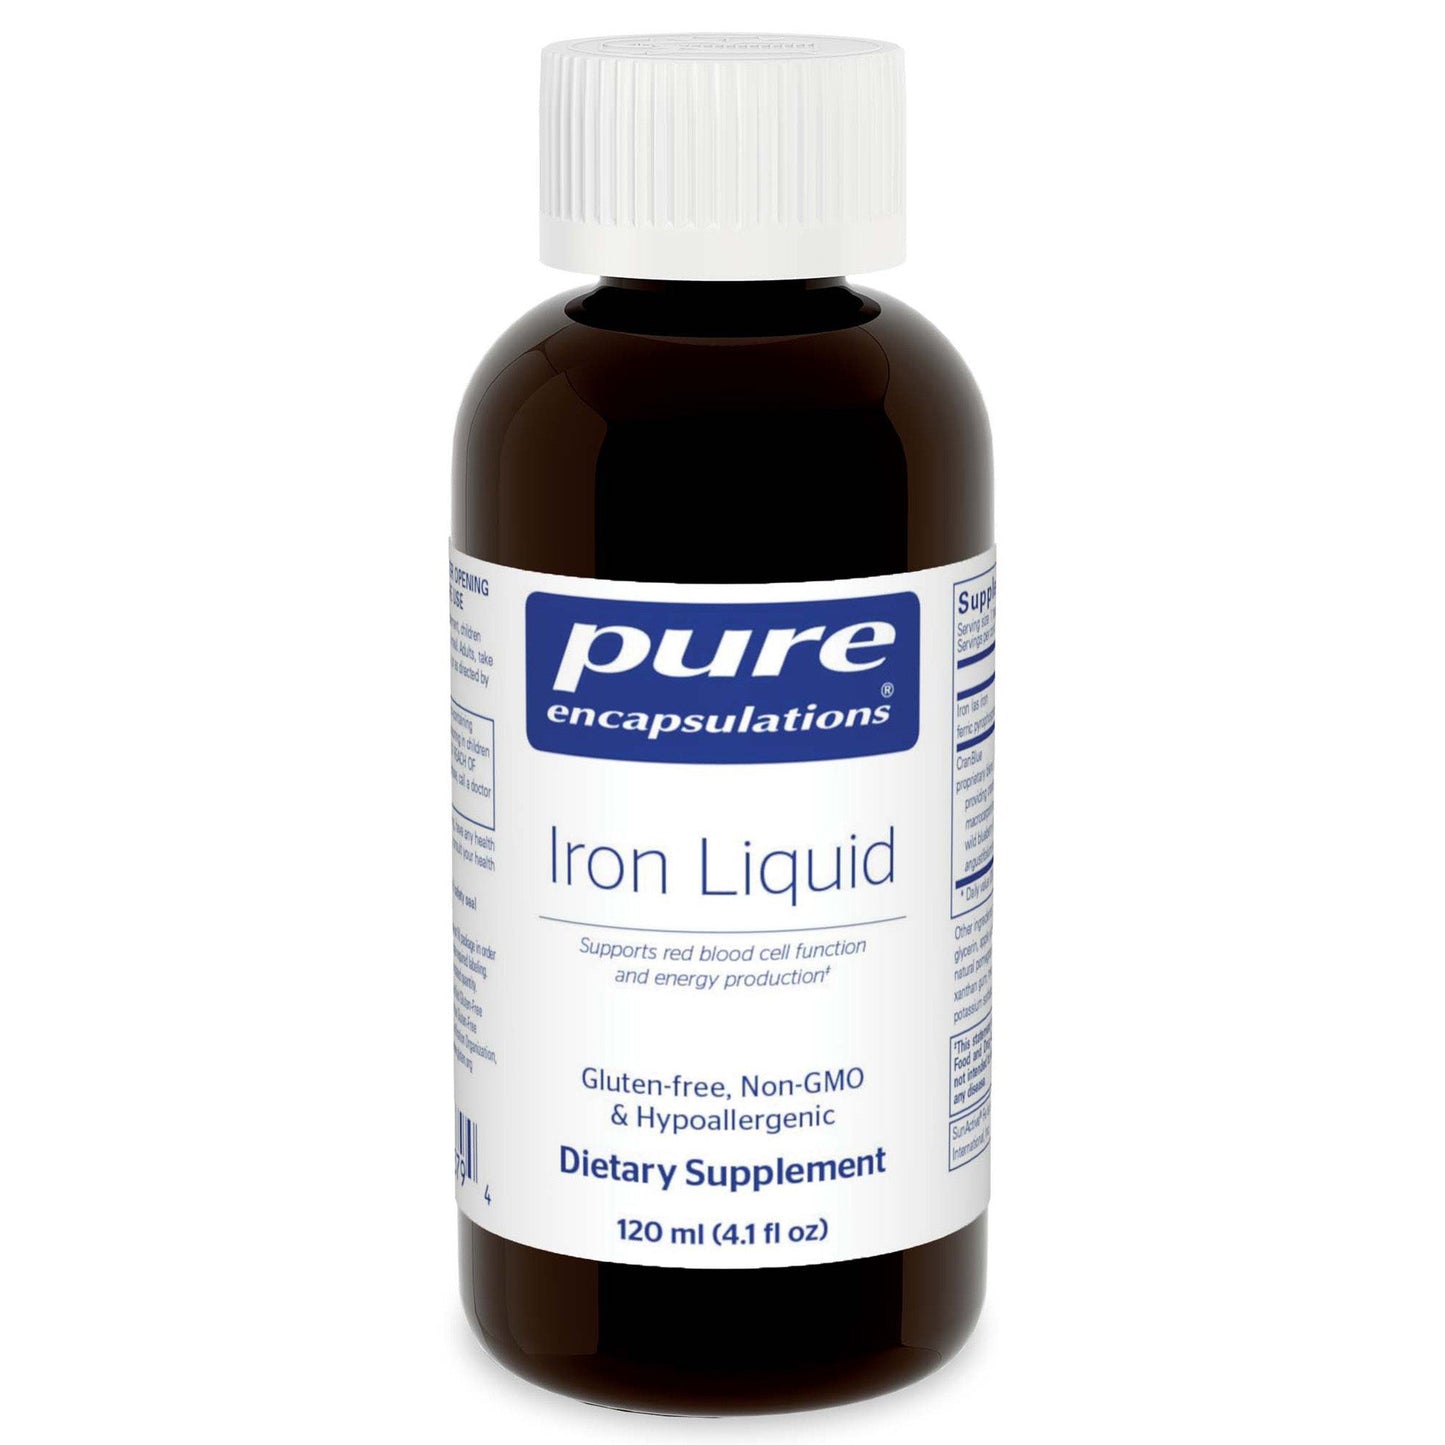 Iron liquid